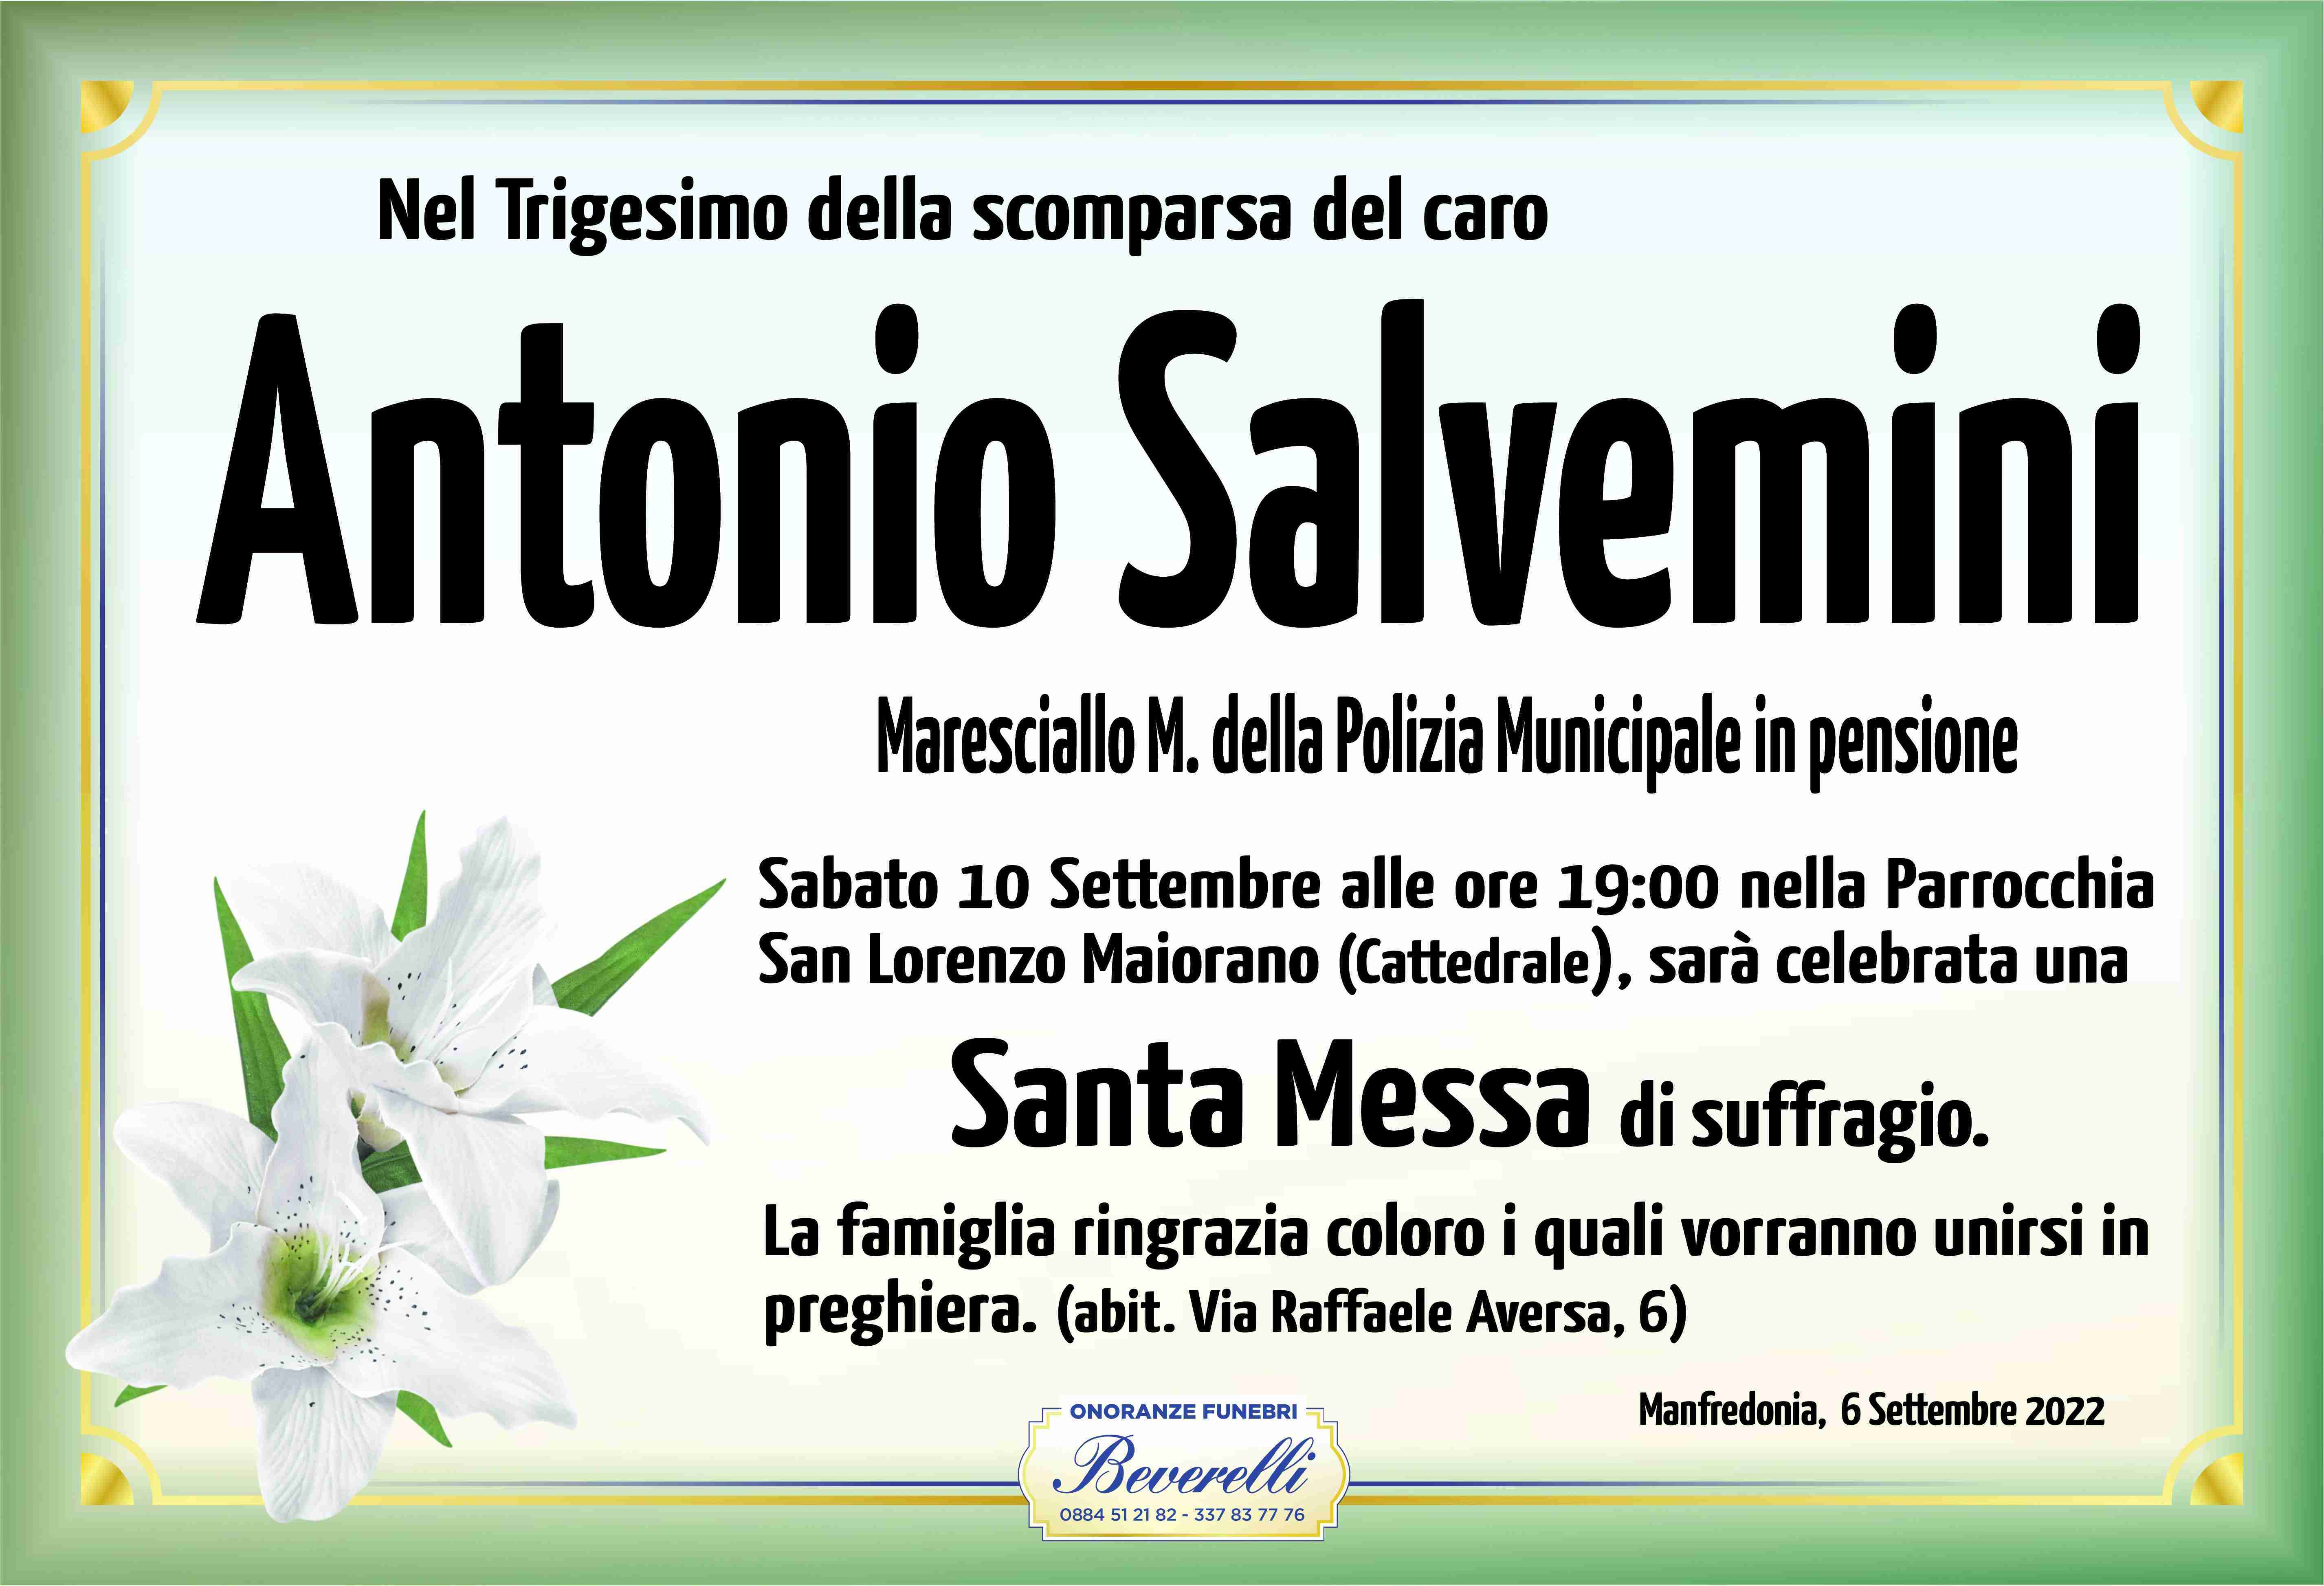 Antonio Salvemini